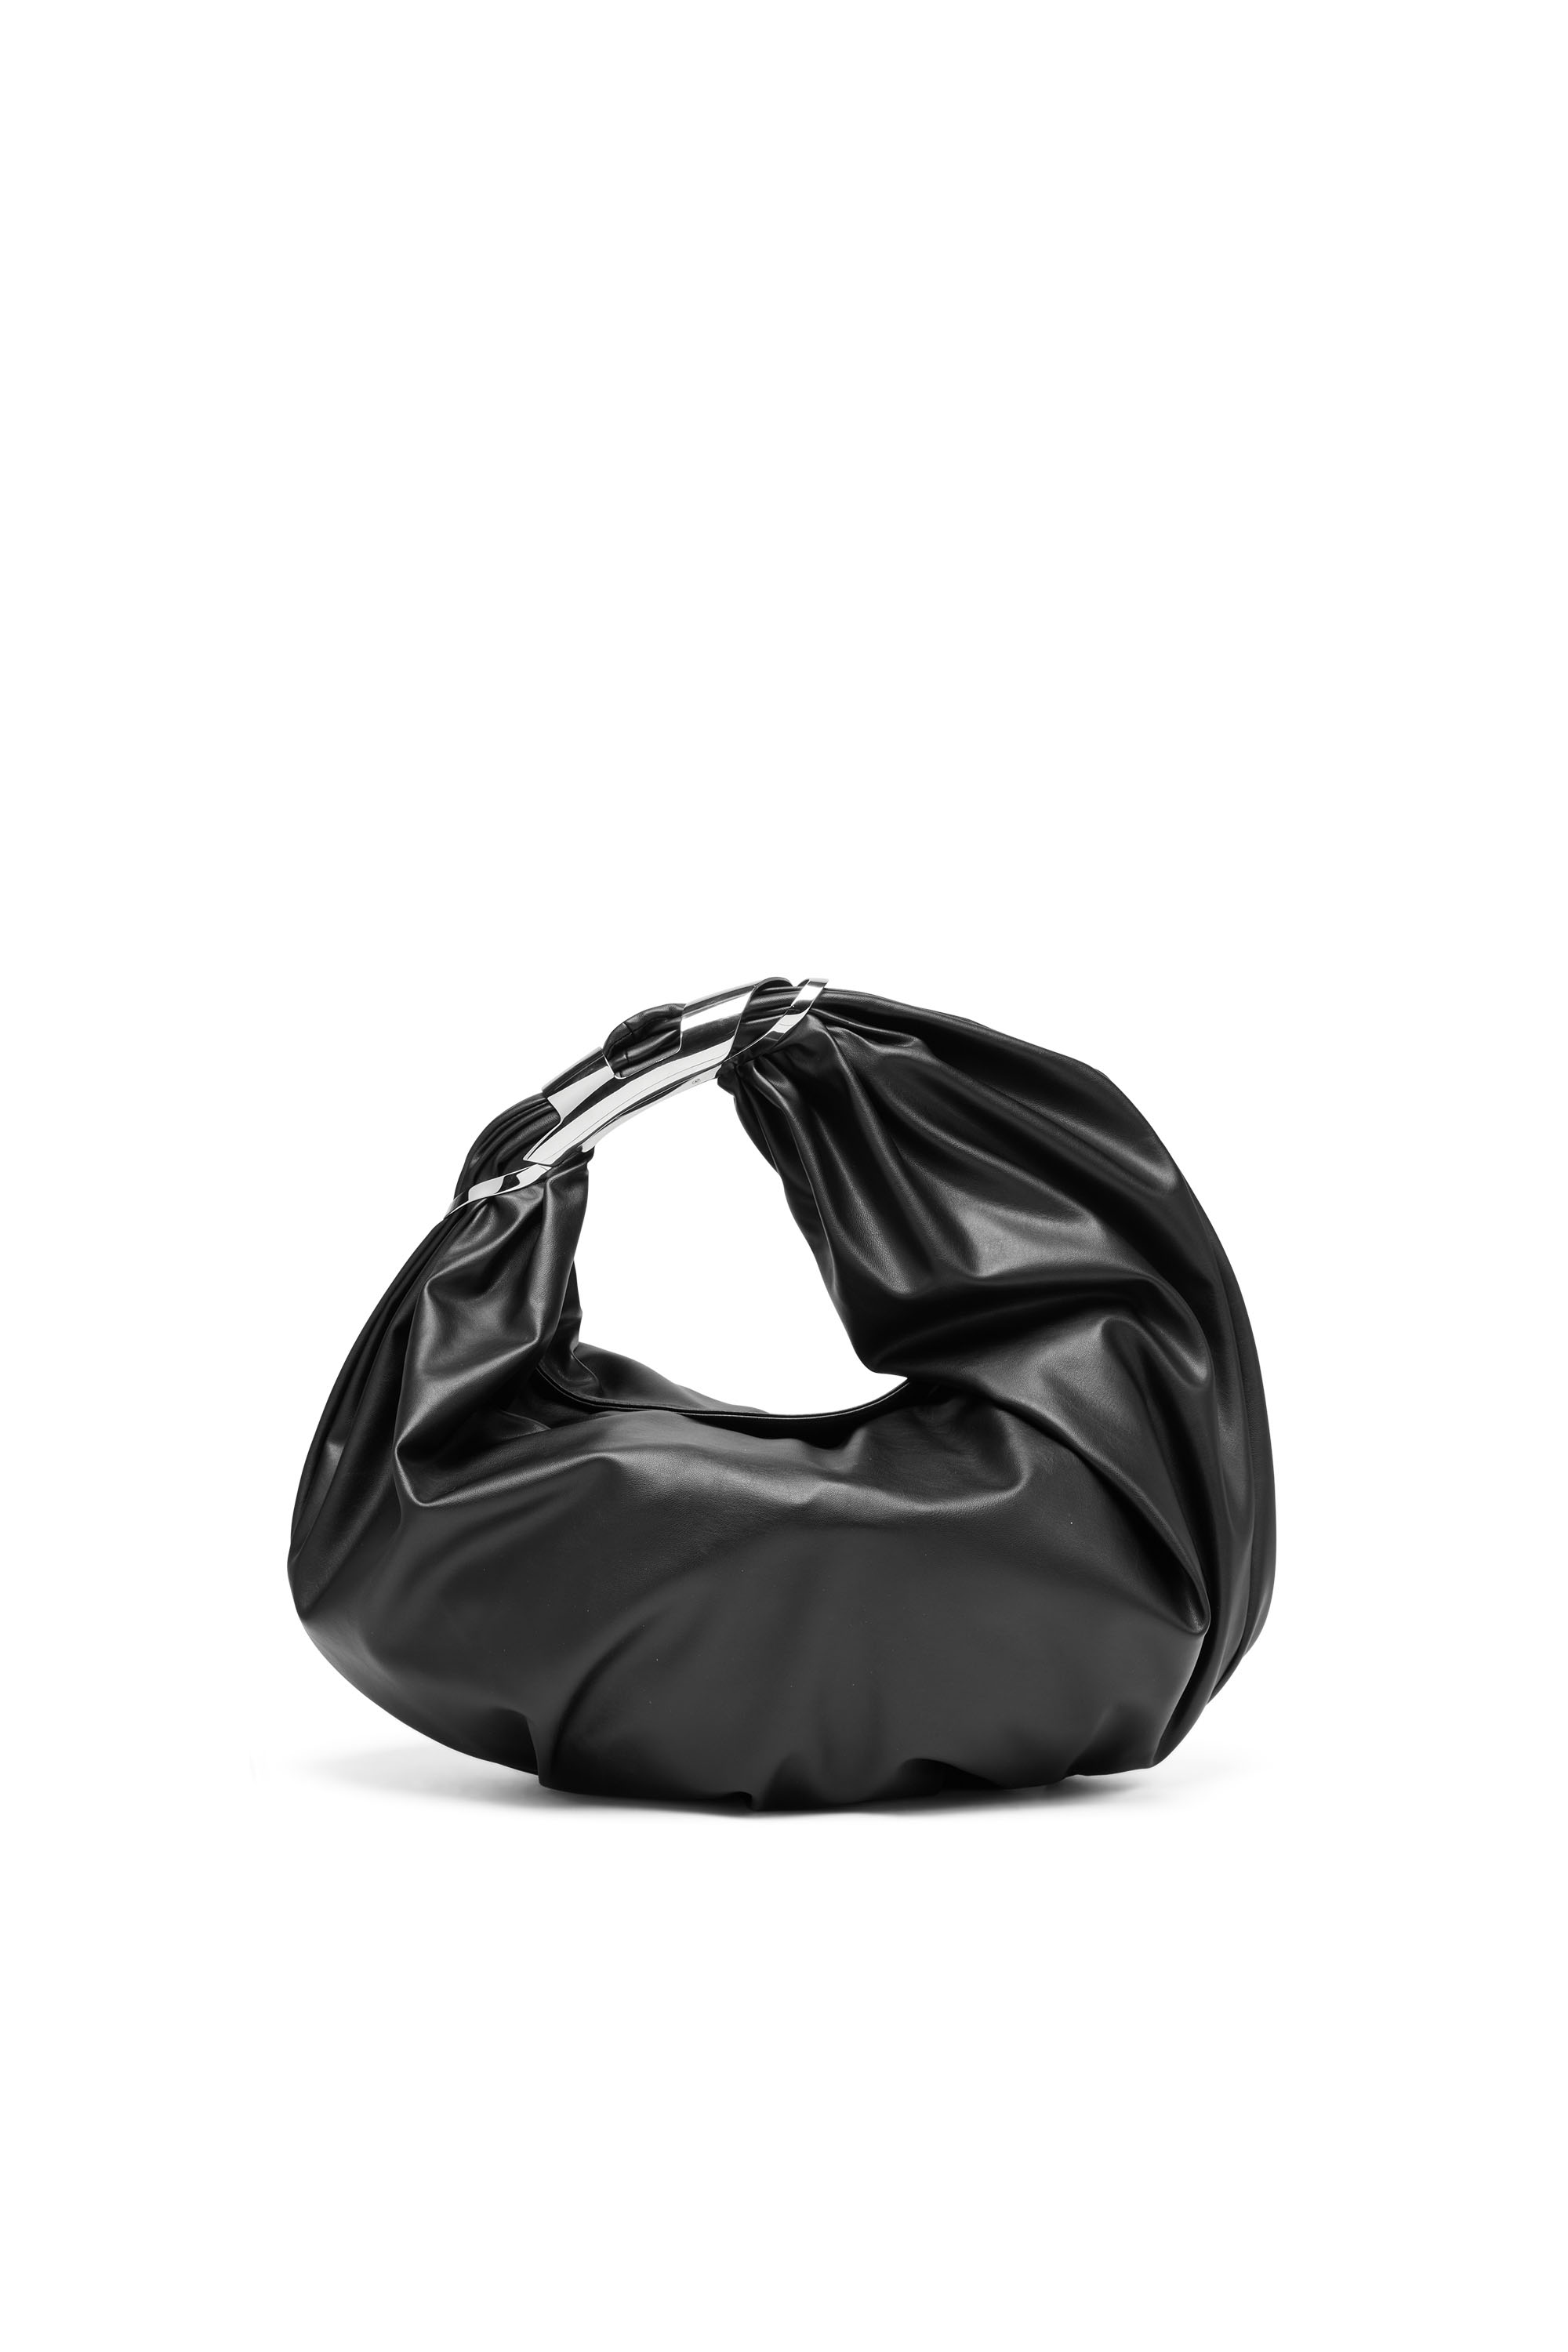 Diesel - Grab-D Hobo M Shoulder Bag - Verzierte Hobo-Tasche aus elastischem PU - Schultertaschen - Damen - Schwarz